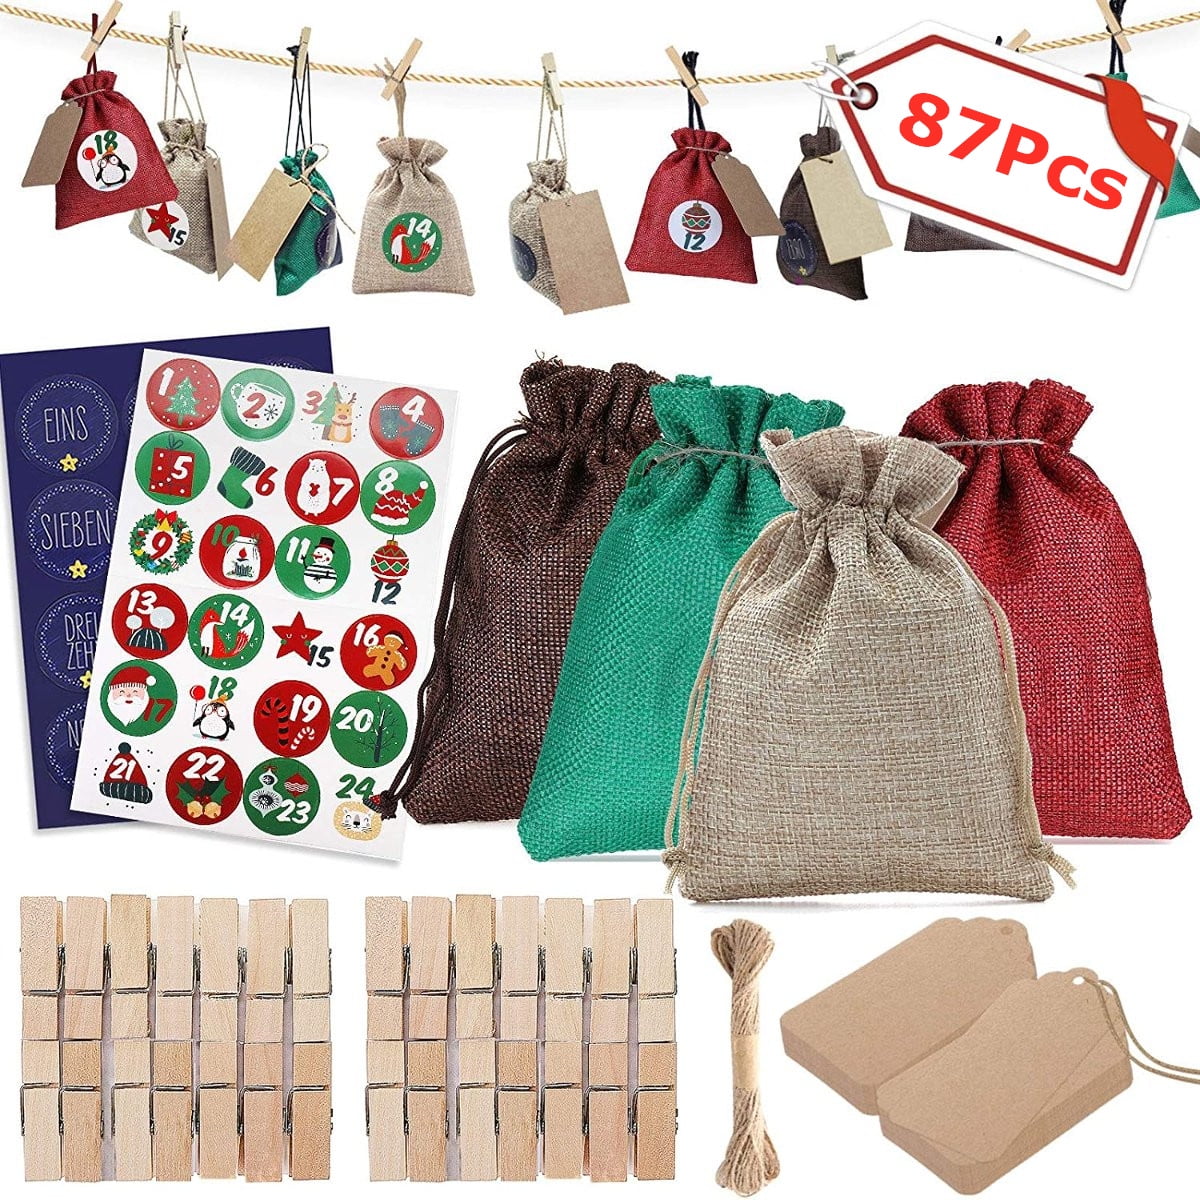 Christmas Sticker Sheet Children’s Party Bag Filler 10 x 11.5 cm 12pcs/card 